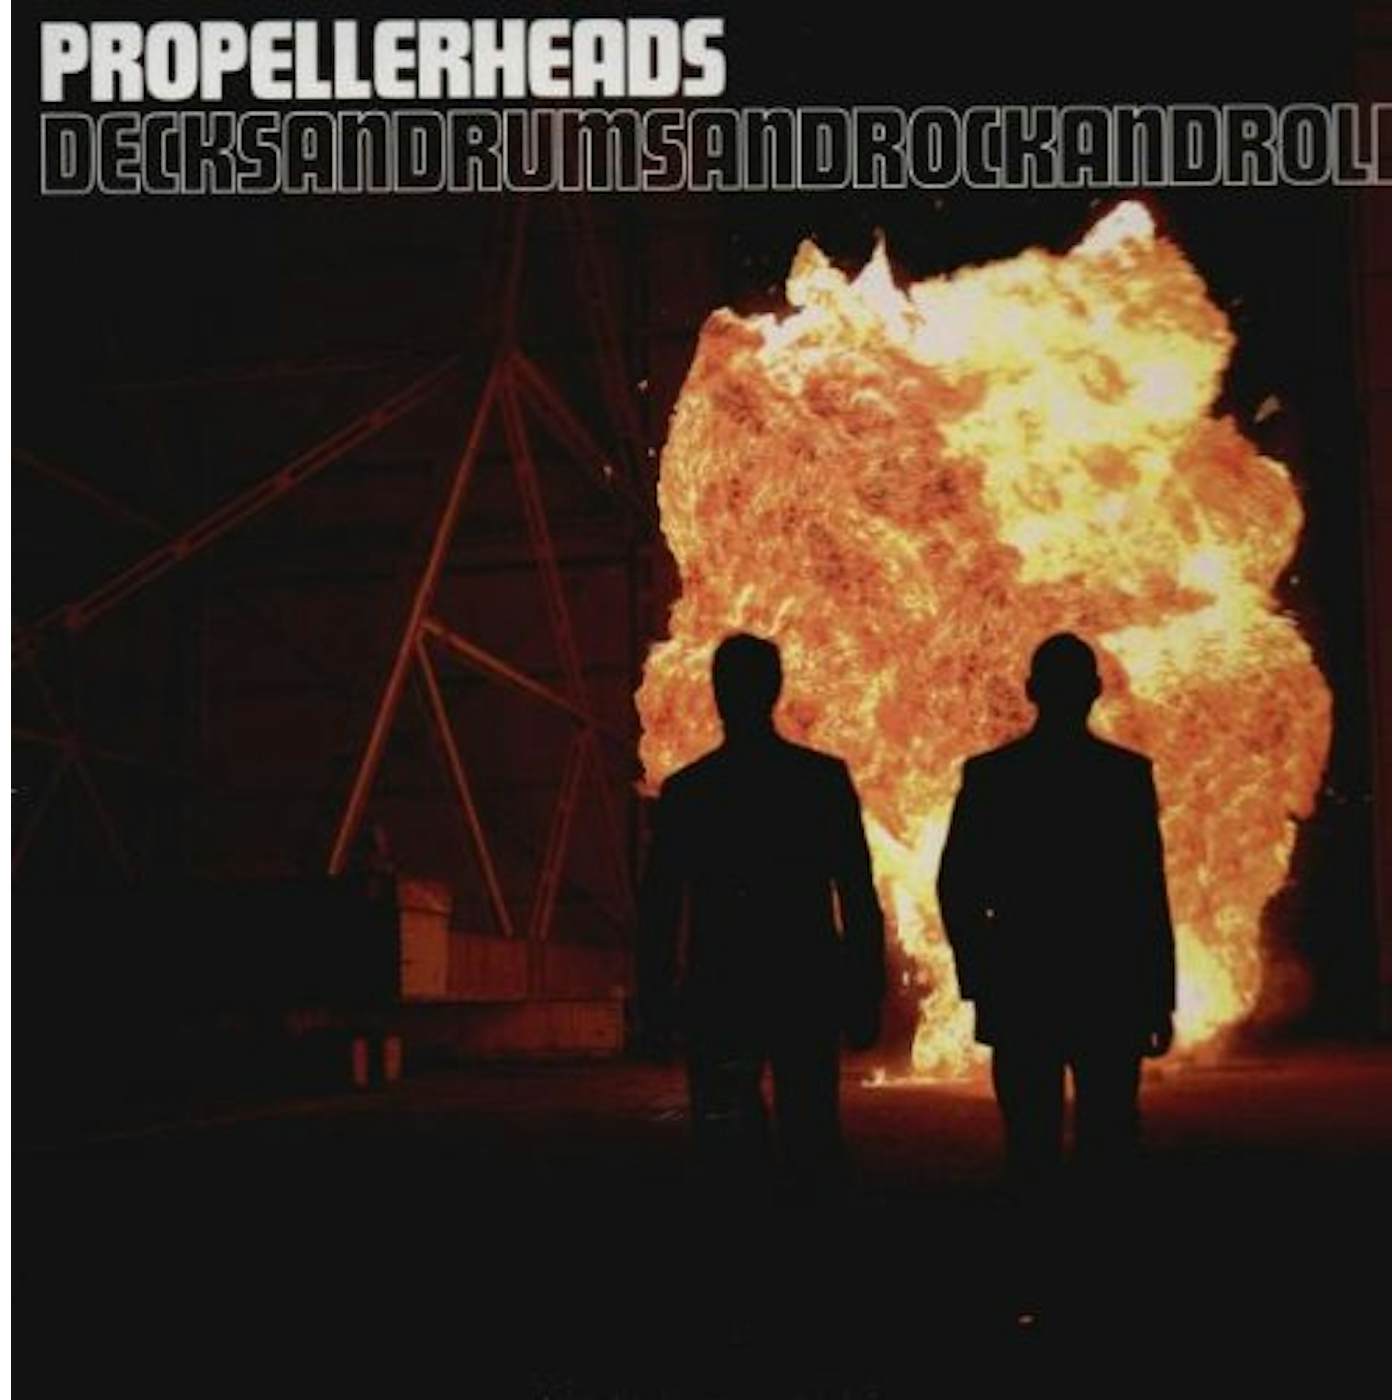 Propellerheads DECKSANDRUMSANDROCKANDROL Vinyl Record